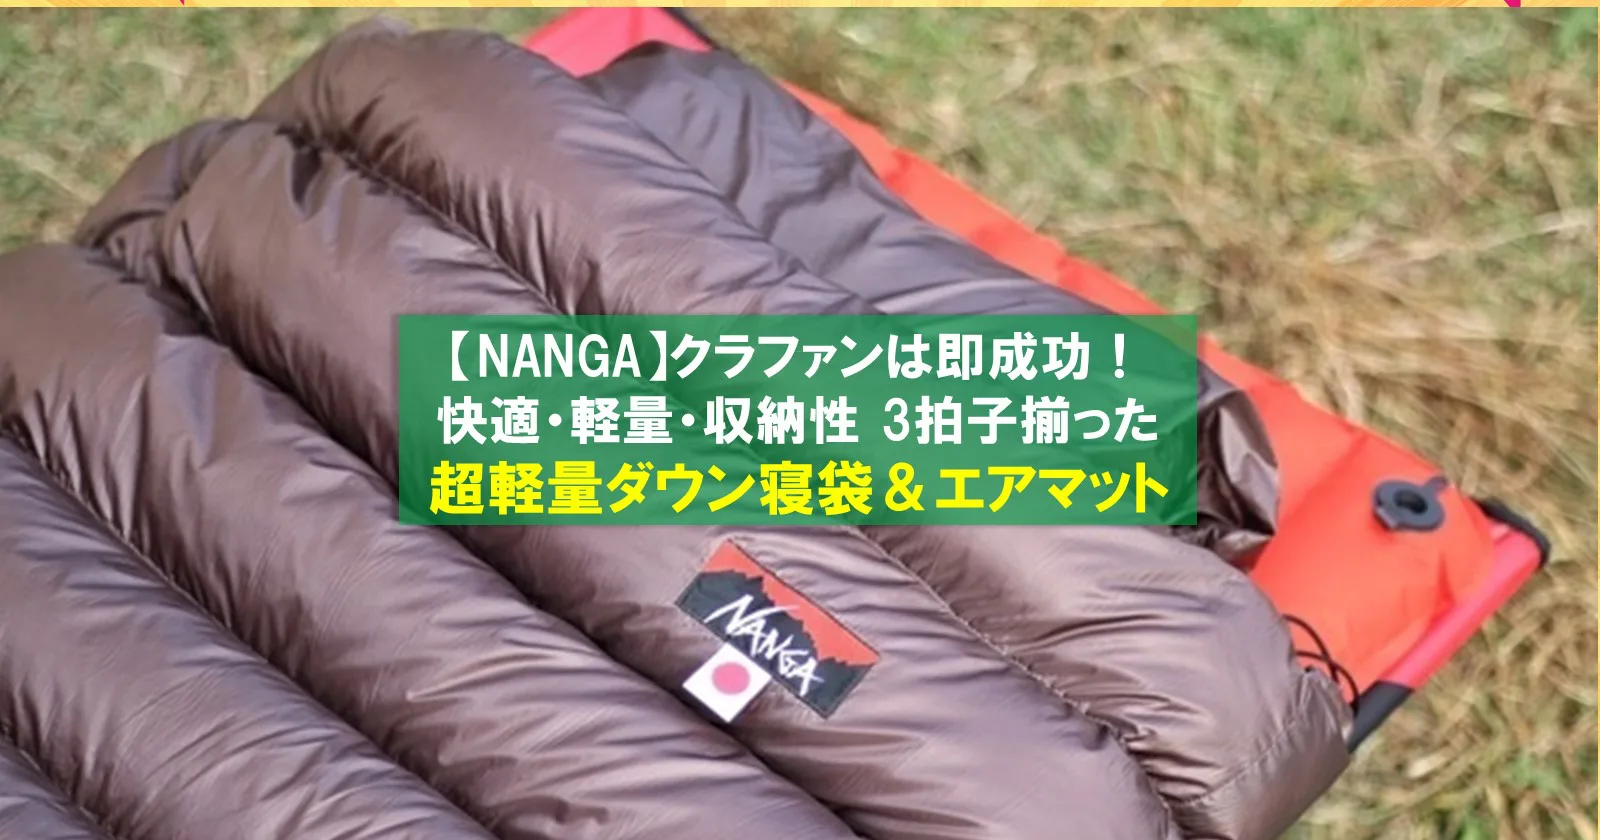 NANGA(ナンガ)「超軽量寝袋&エアマット」は快適さ・軽さ 